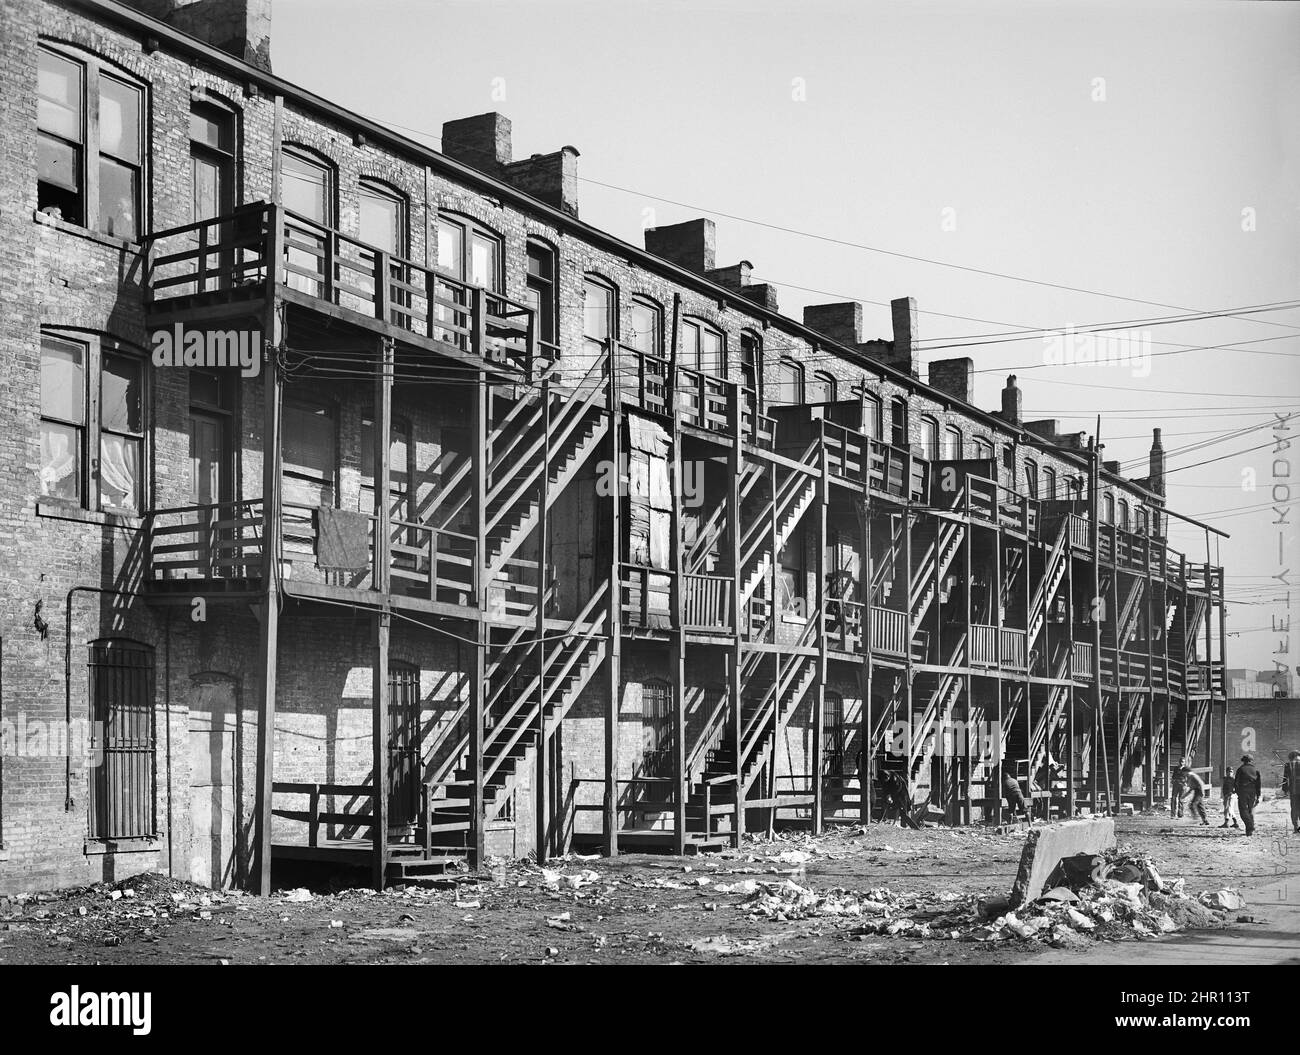 Vue arrière des maisons d'appartements avec escalier en bois, côté sud, Chicago, Illinois, États-Unis, Russell Lee, U.S. Office of War information/U.S. Administration de la sécurité agricole, avril 1941 Banque D'Images